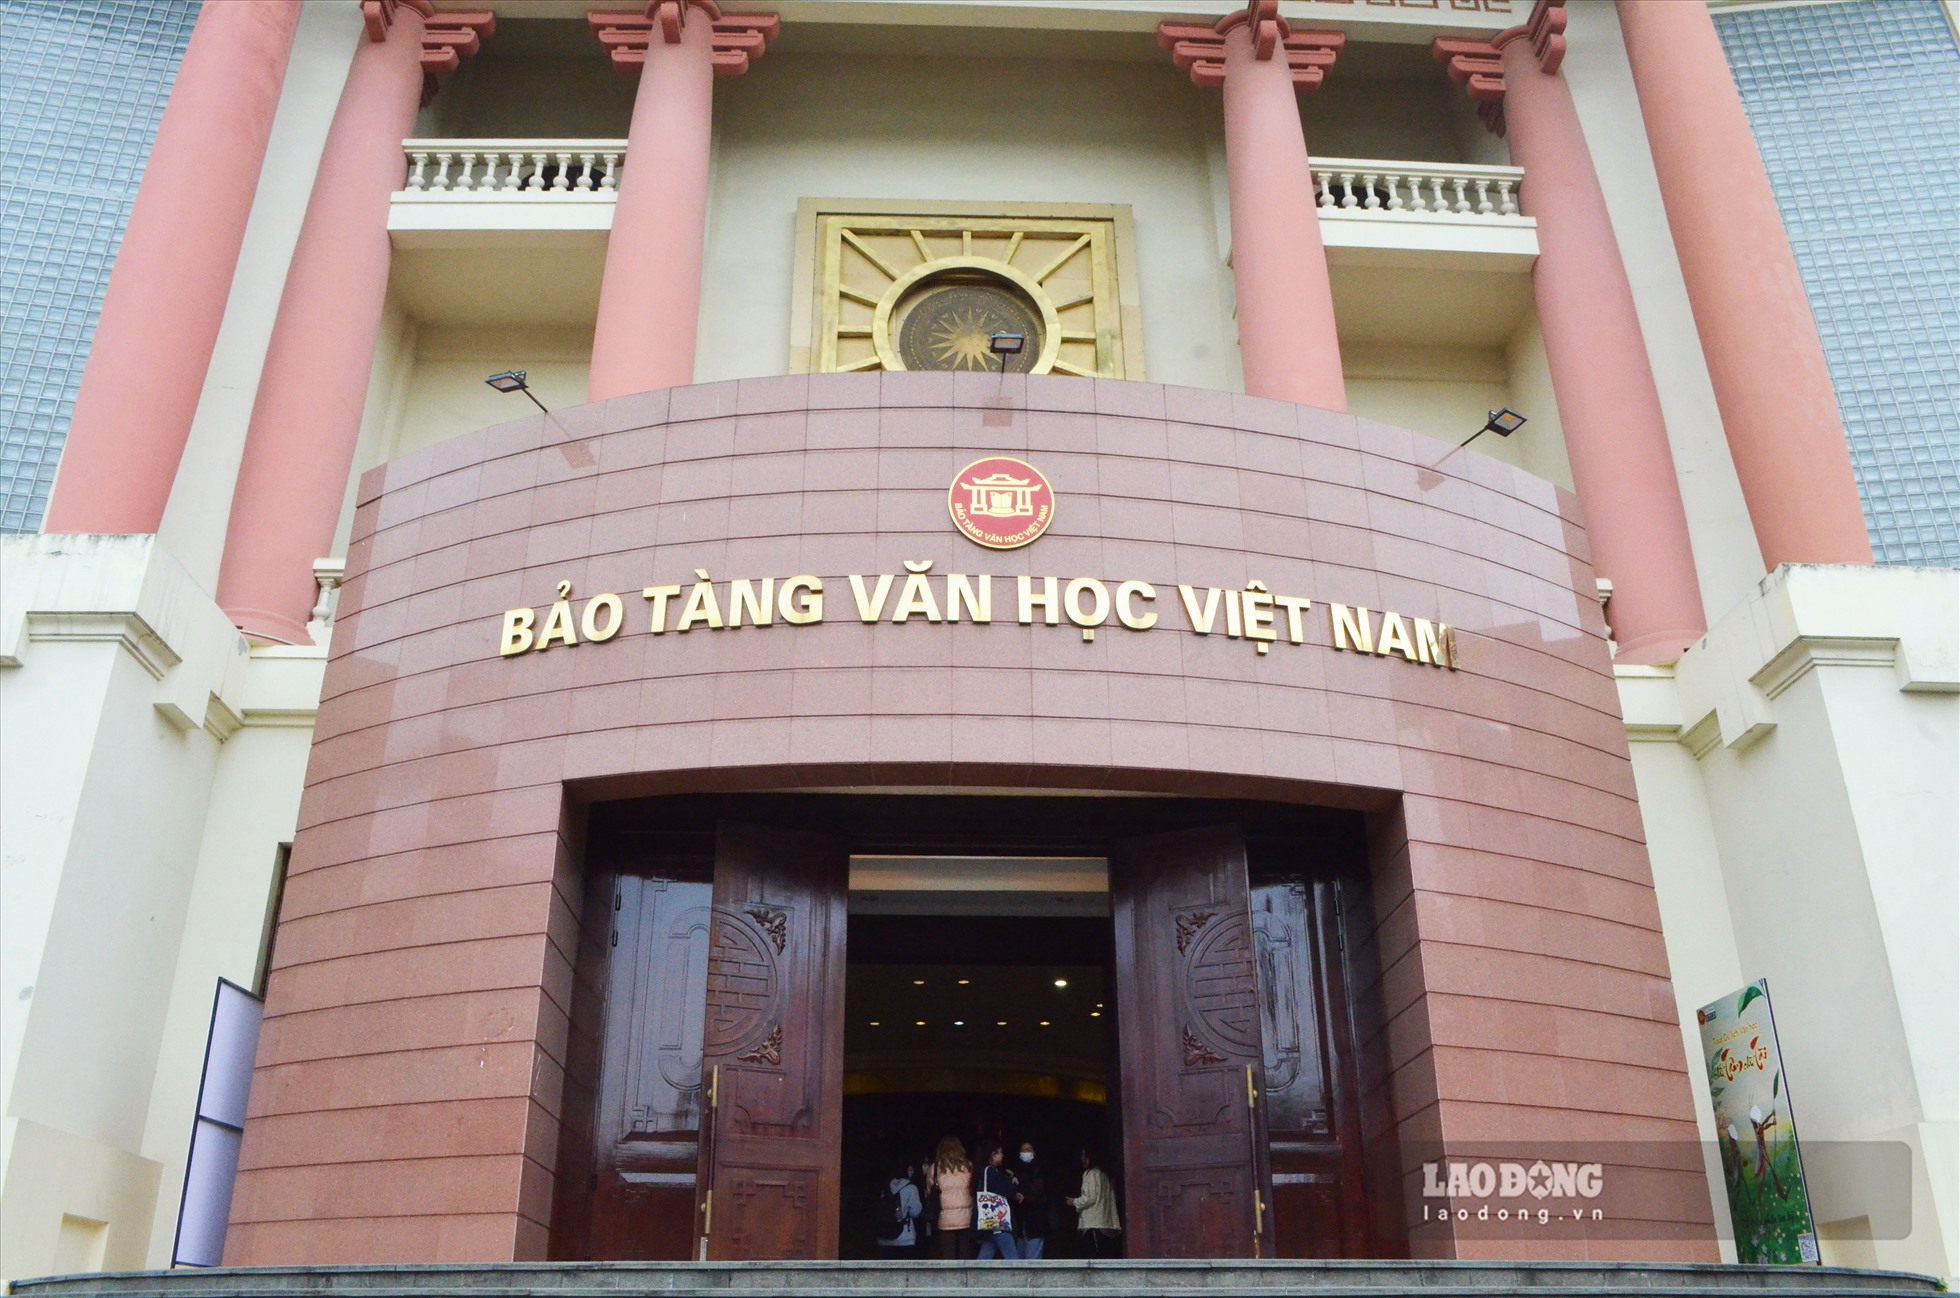 Bảo tàng Văn học Việt Nam được xây dựng tại địa chỉ 275 Âu Cơ, phường Quảng An (quận Tây Hồ, TP Hà Nội) với diện tích hơn 2.000m2. Mảnh đất này vào những năm 60-70 của thế kỷ trước là Trường Viết văn Quảng Bá của Hội Nhà văn Việt Nam . Nơi đây đã lưu lại nhiều kỉ niệm của các nhà văn, nhà thơ nổi tiếng.